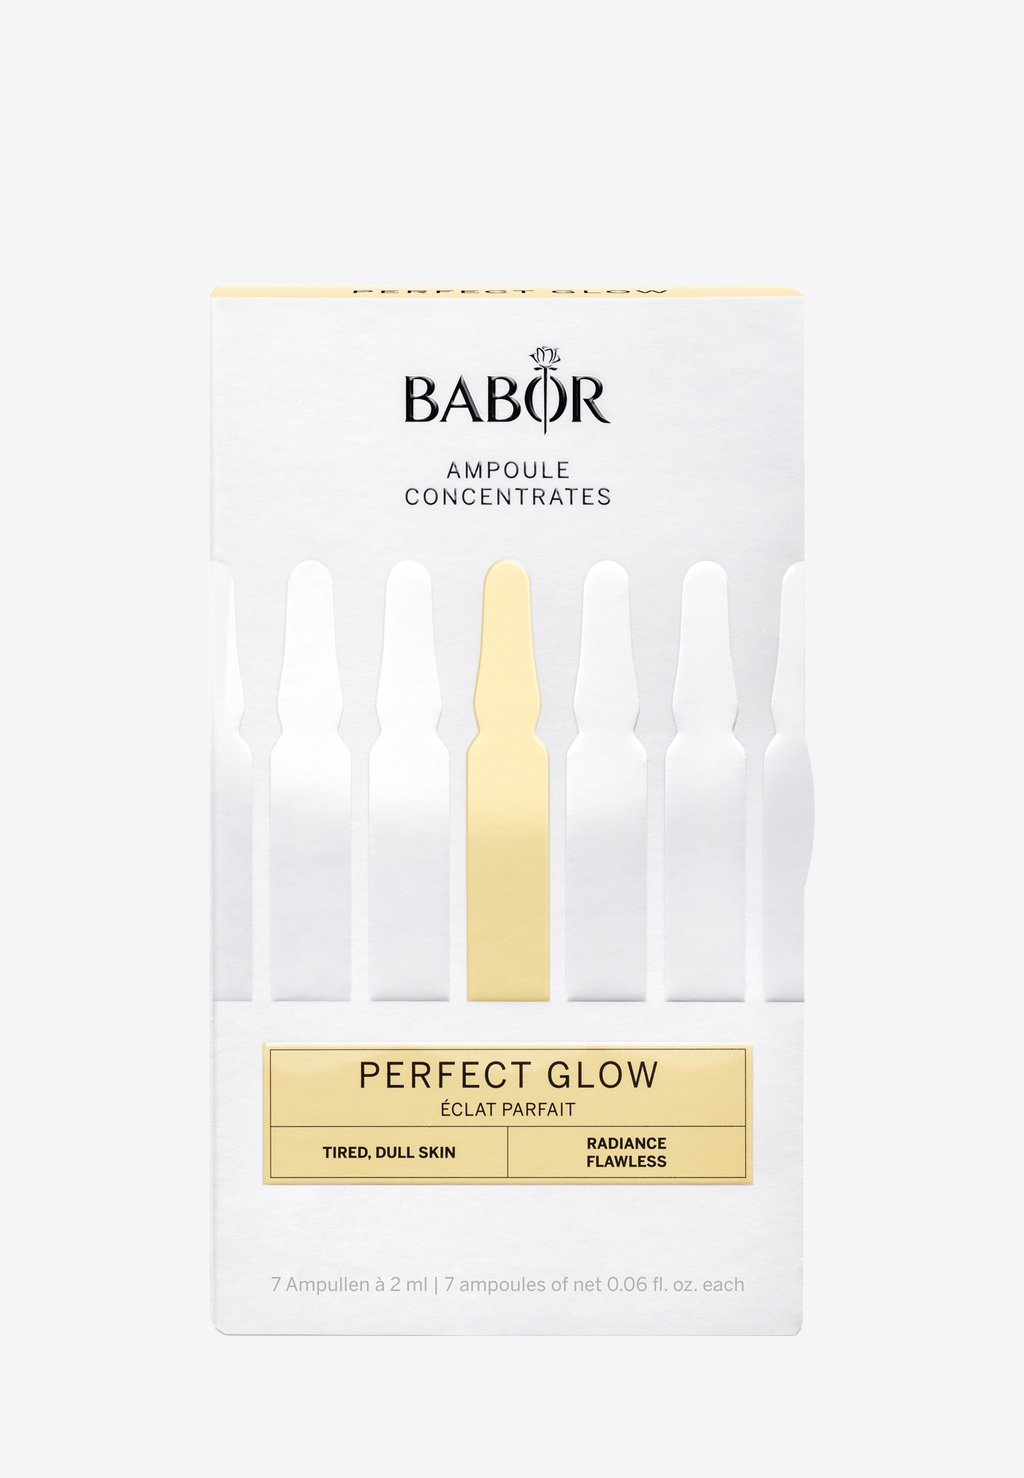 Набор для ухода за кожей Perfect Glow BABOR belif набор для ухода за кожей лица magic glow set